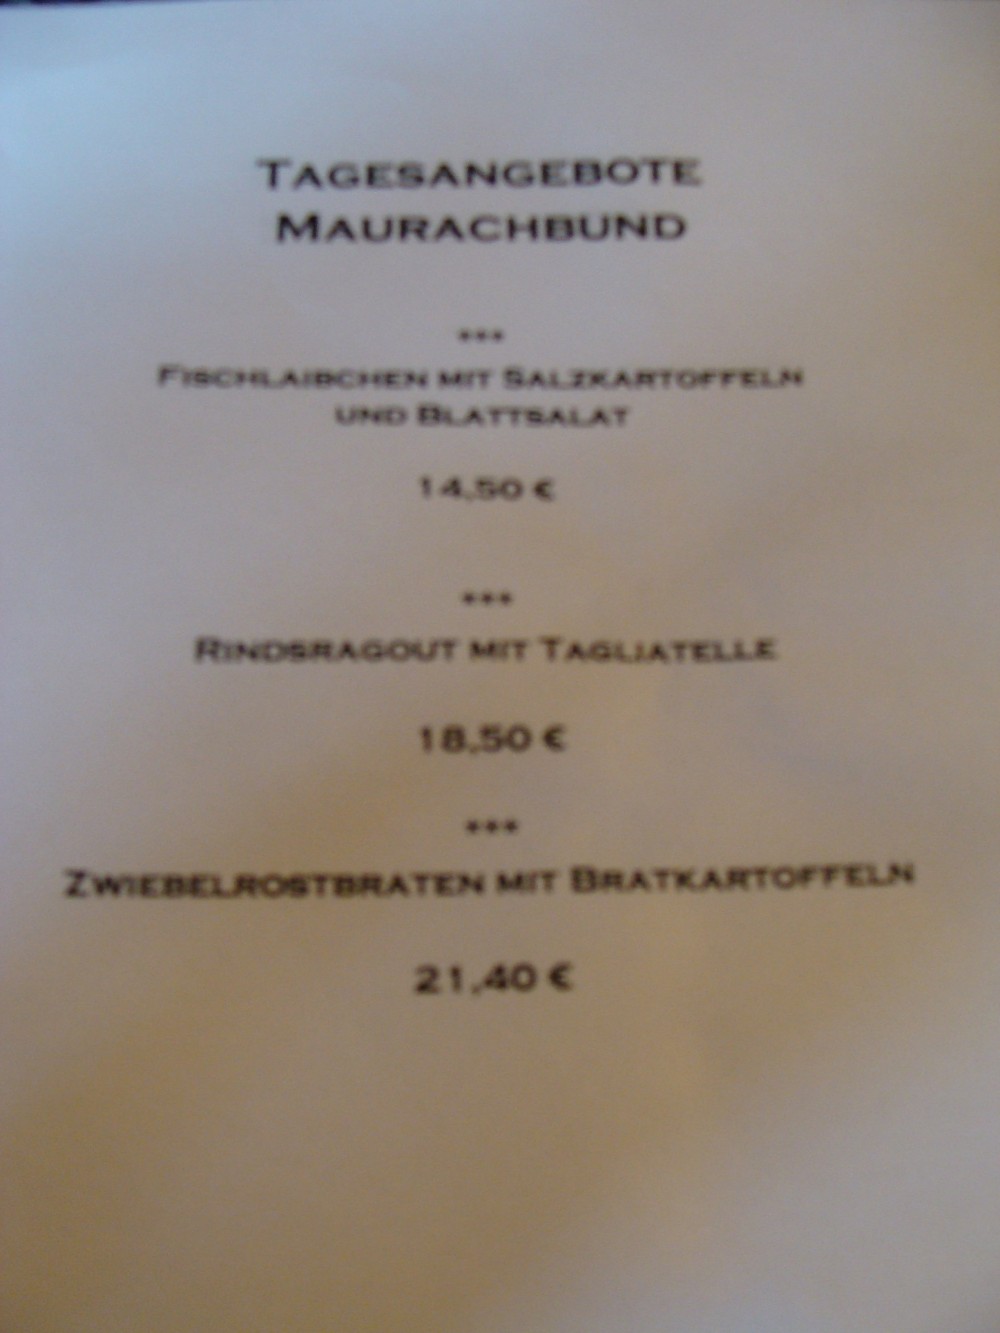 Tagesangebot vom 10. März 2013. - Maurachbund - Bregenz